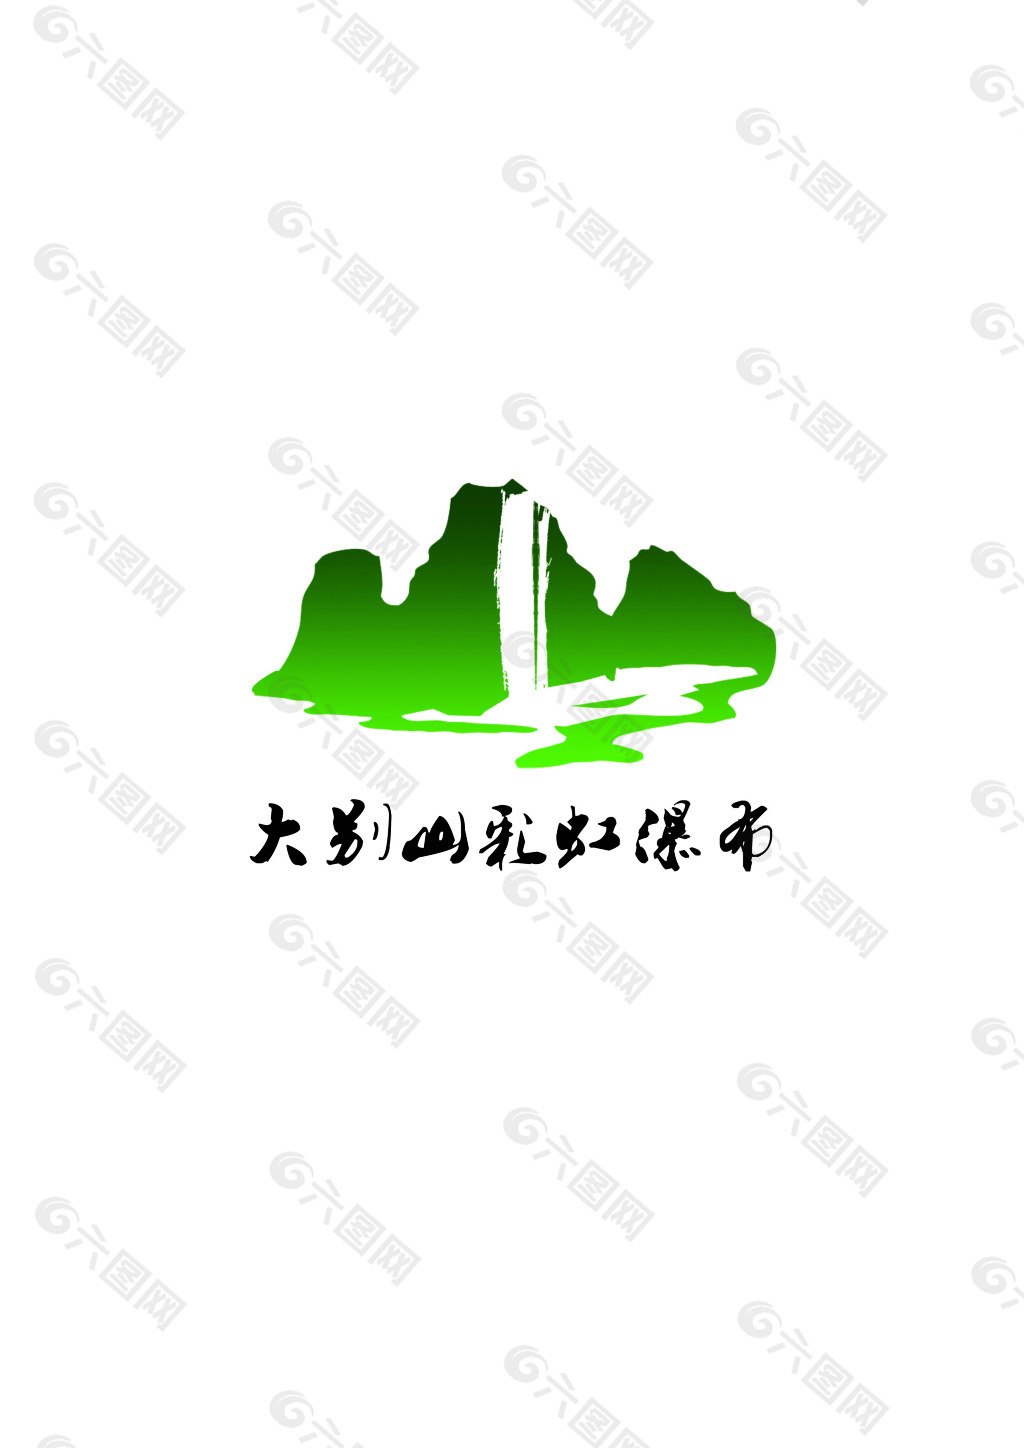 景区彩虹瀑布logo